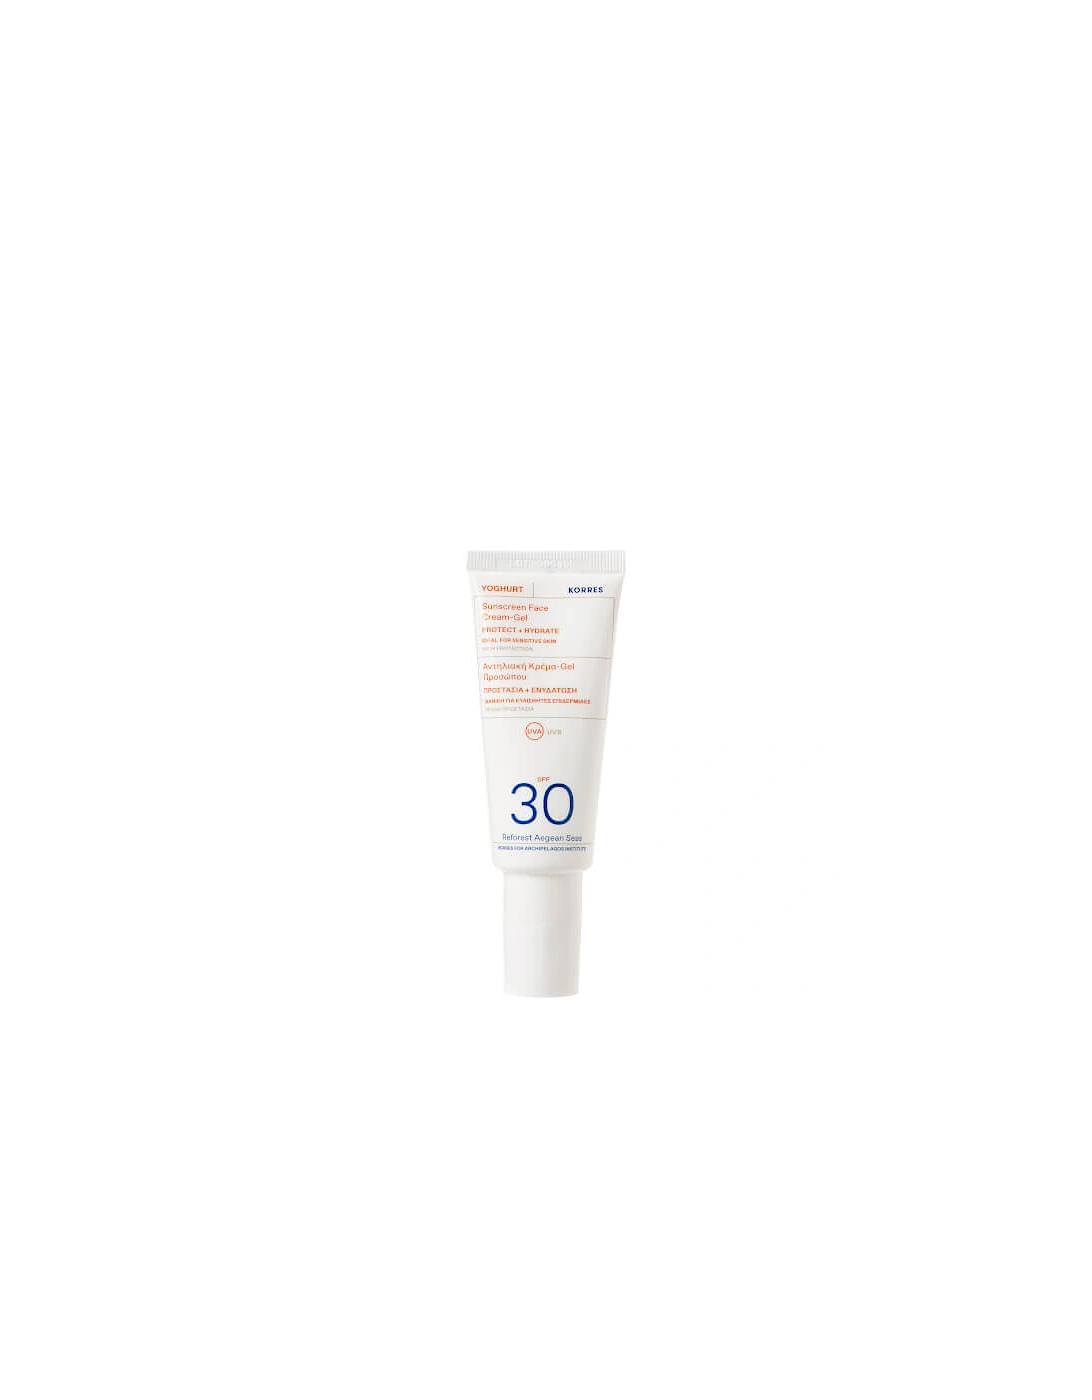 YOGHURT Face Sunscreen SPF30 40ml, 2 of 1